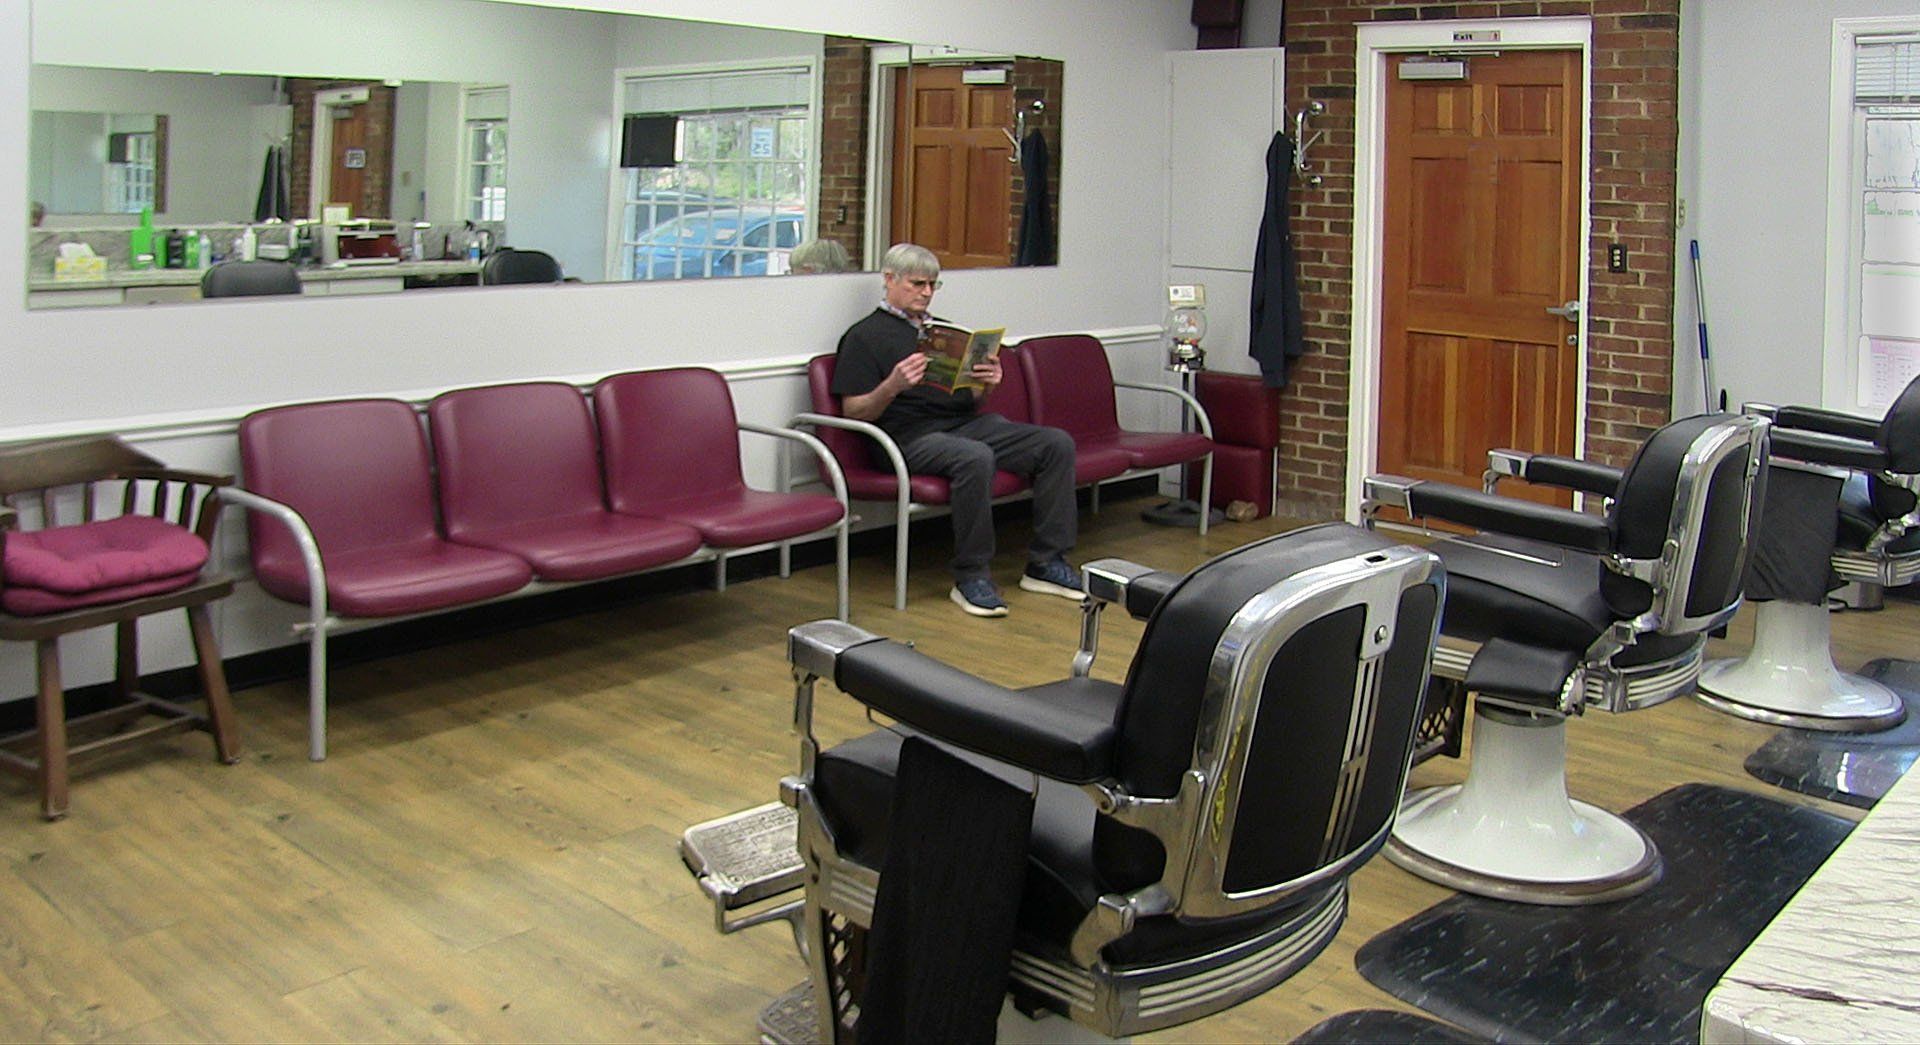 haddon township barber shop